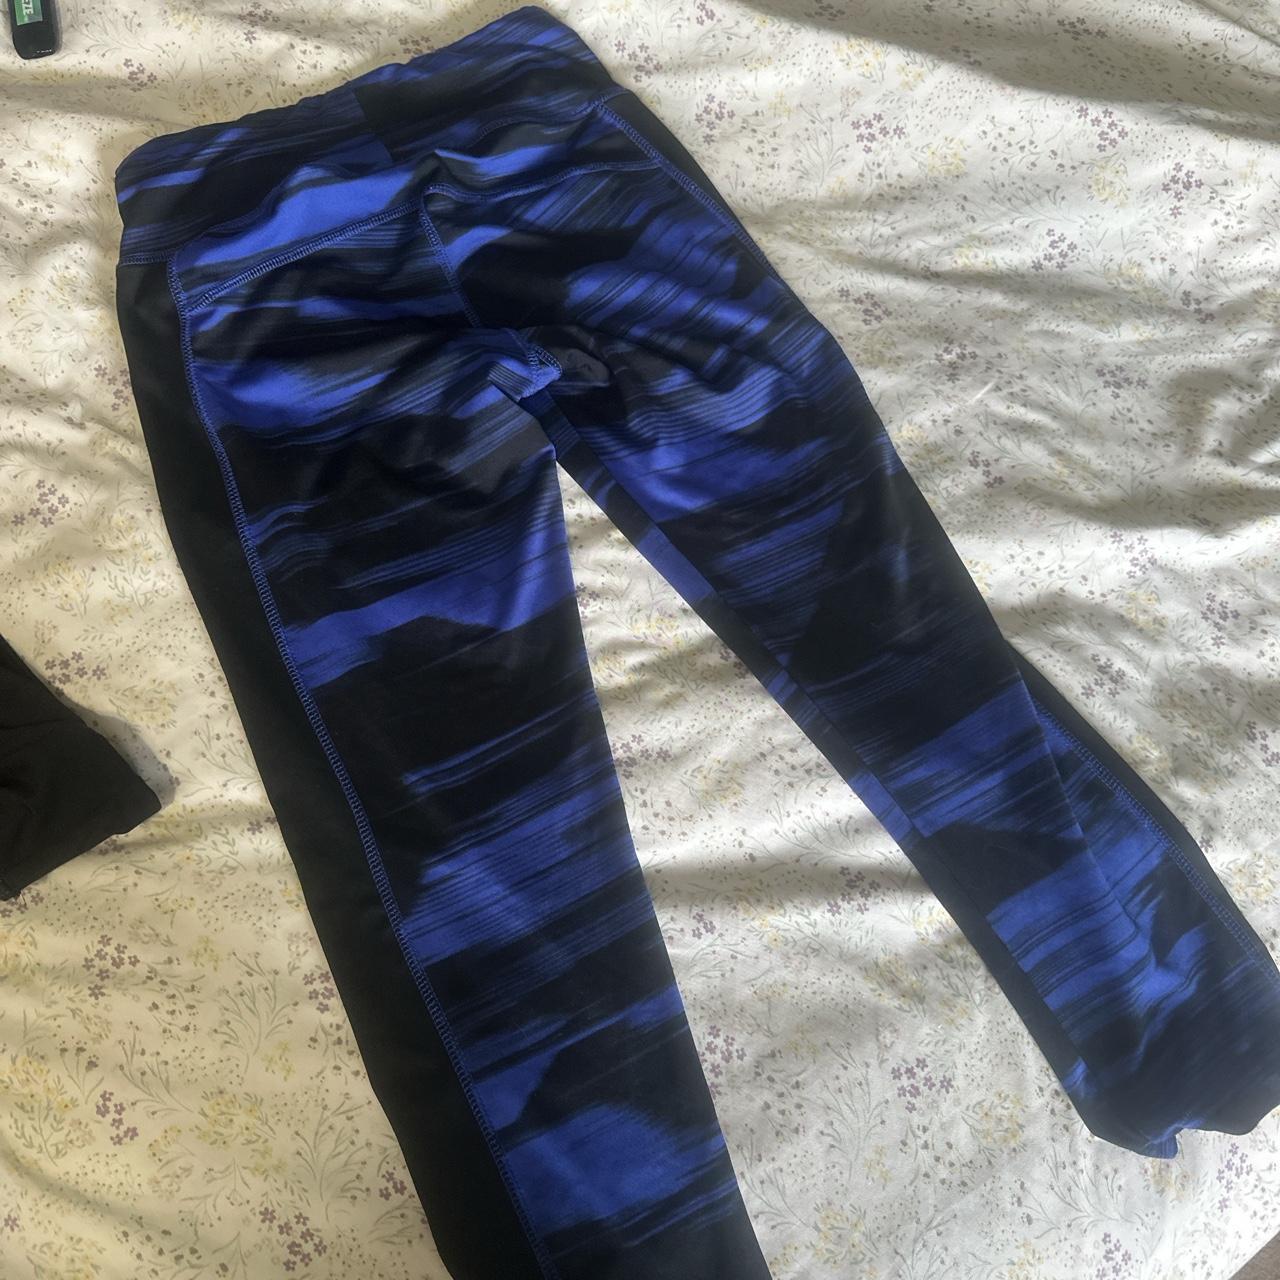 Bundle of two Lululemon leggings. One is Capri - Depop